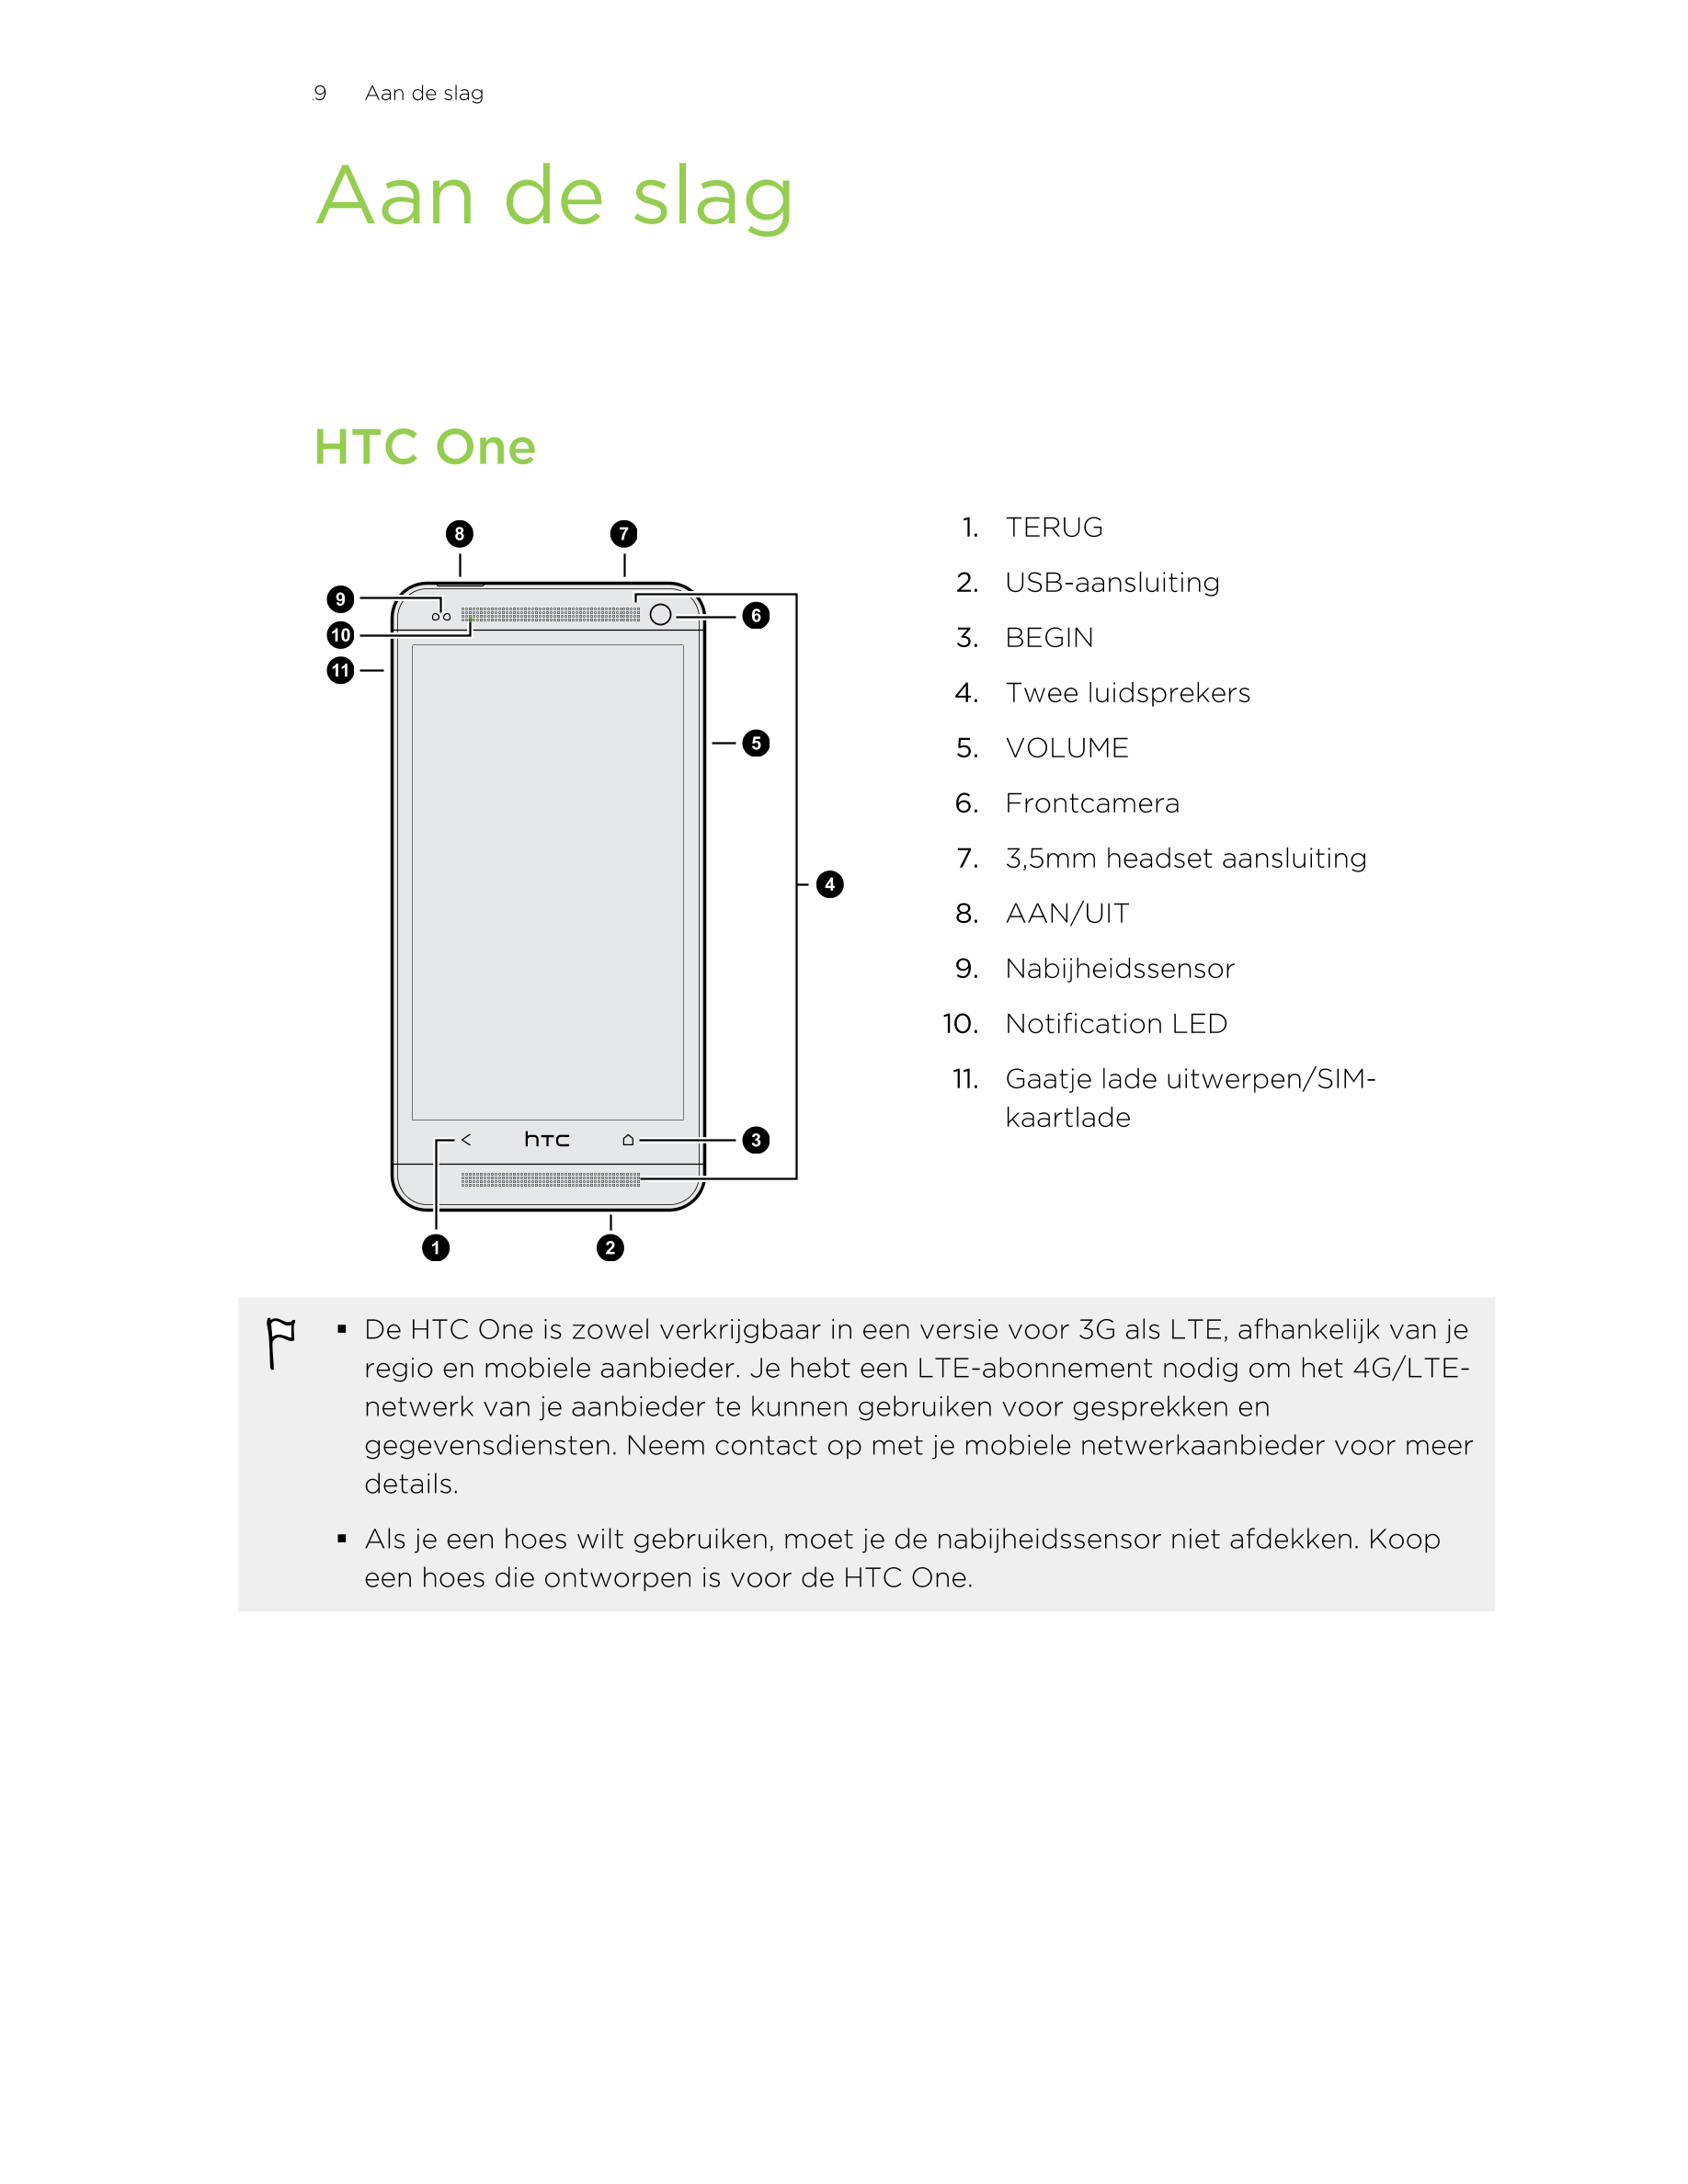 9      Aan de slag
Aan de slag
HTC One
1. TERUG
2. USB-aansluiting
3. BEGIN
4. Twee luidsprekers
5. VOLUME
6. Frontcamera
7. 3,5